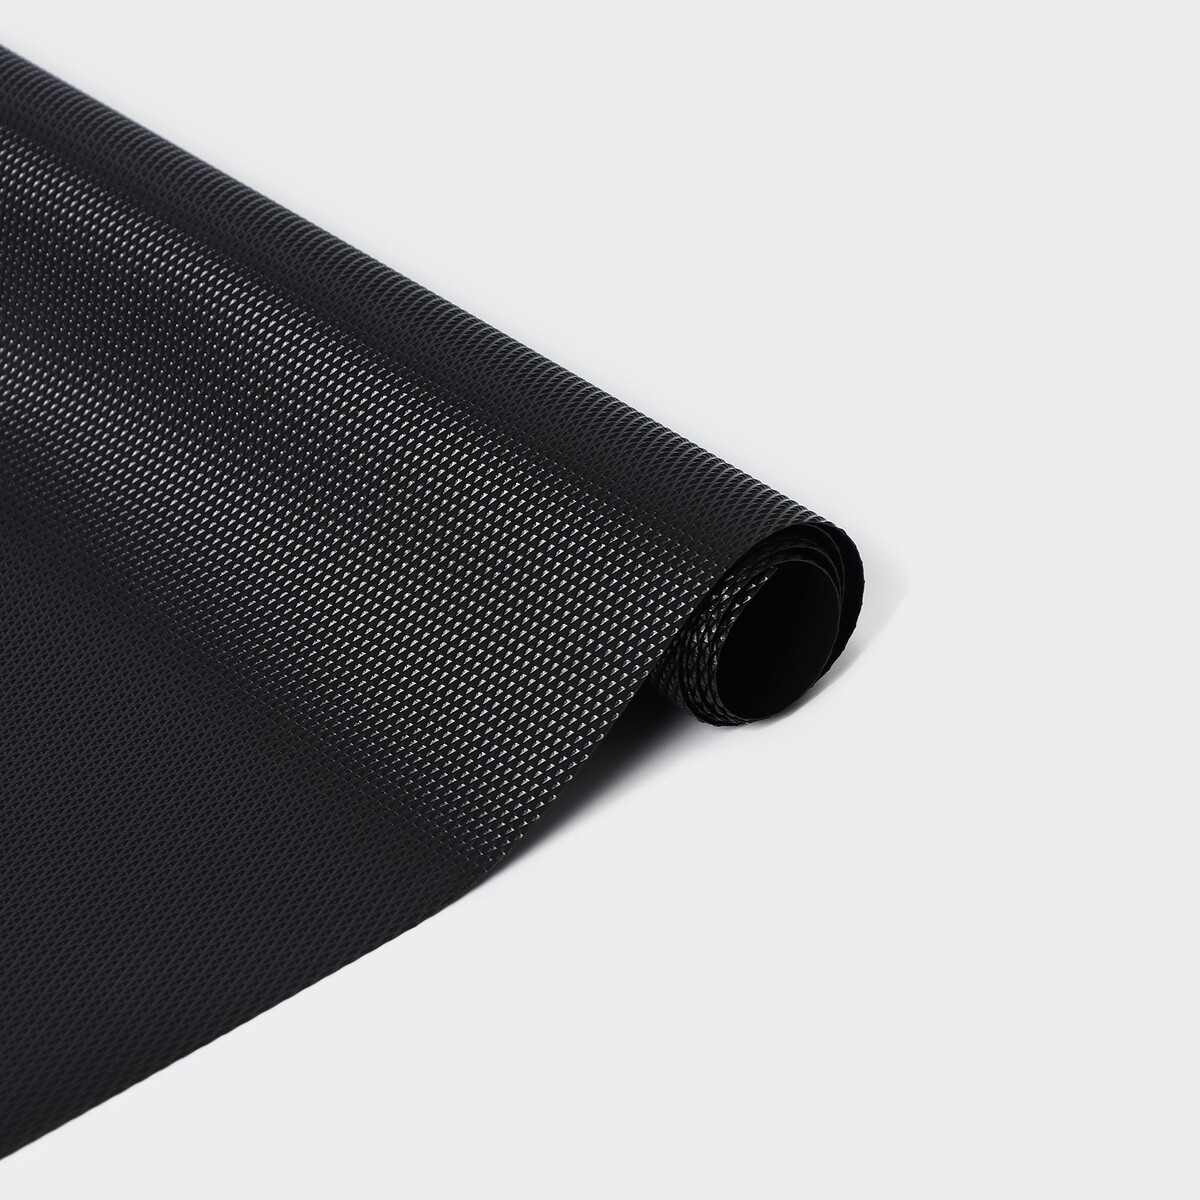 Коврик противоскользящий ladо́m elegiam, 30×90 см, цвет черный коврик противоскользящий ladо́m elegiam 30×150 см